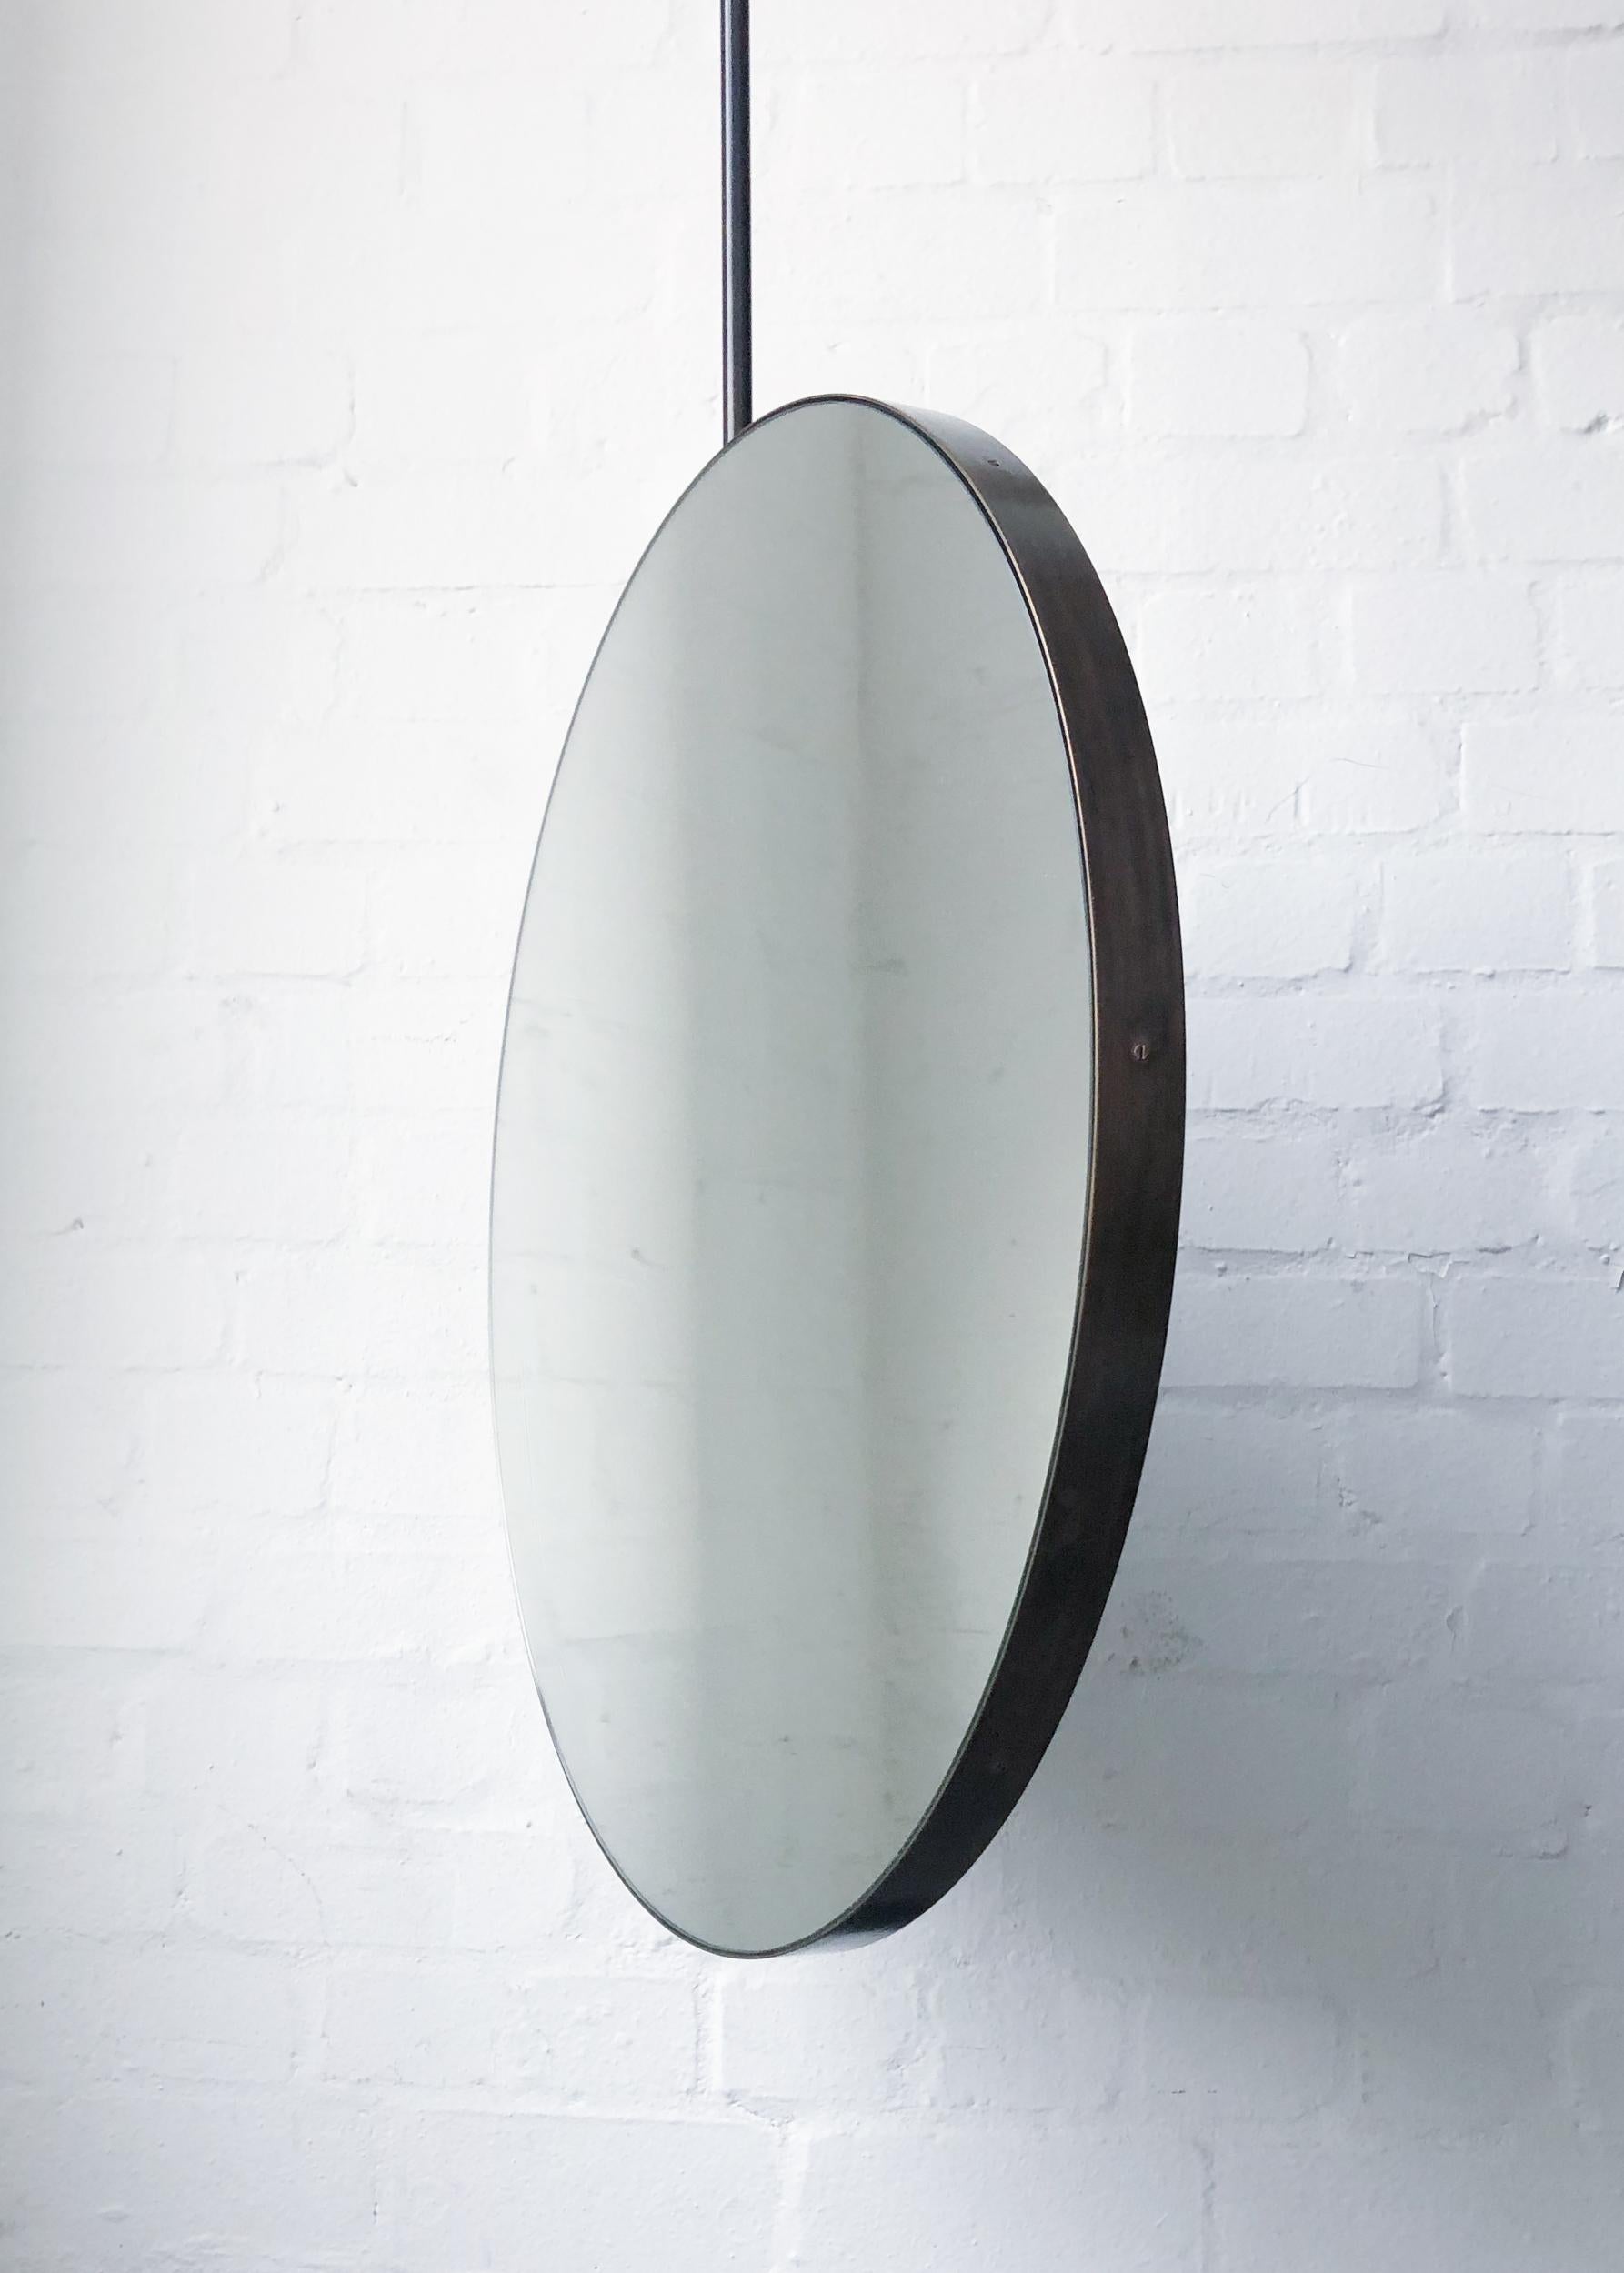 Miroir rond unique et exquis suspendu au plafond avec un cadre en laiton fini avec une patine bronze élégante.

550mm (21.65